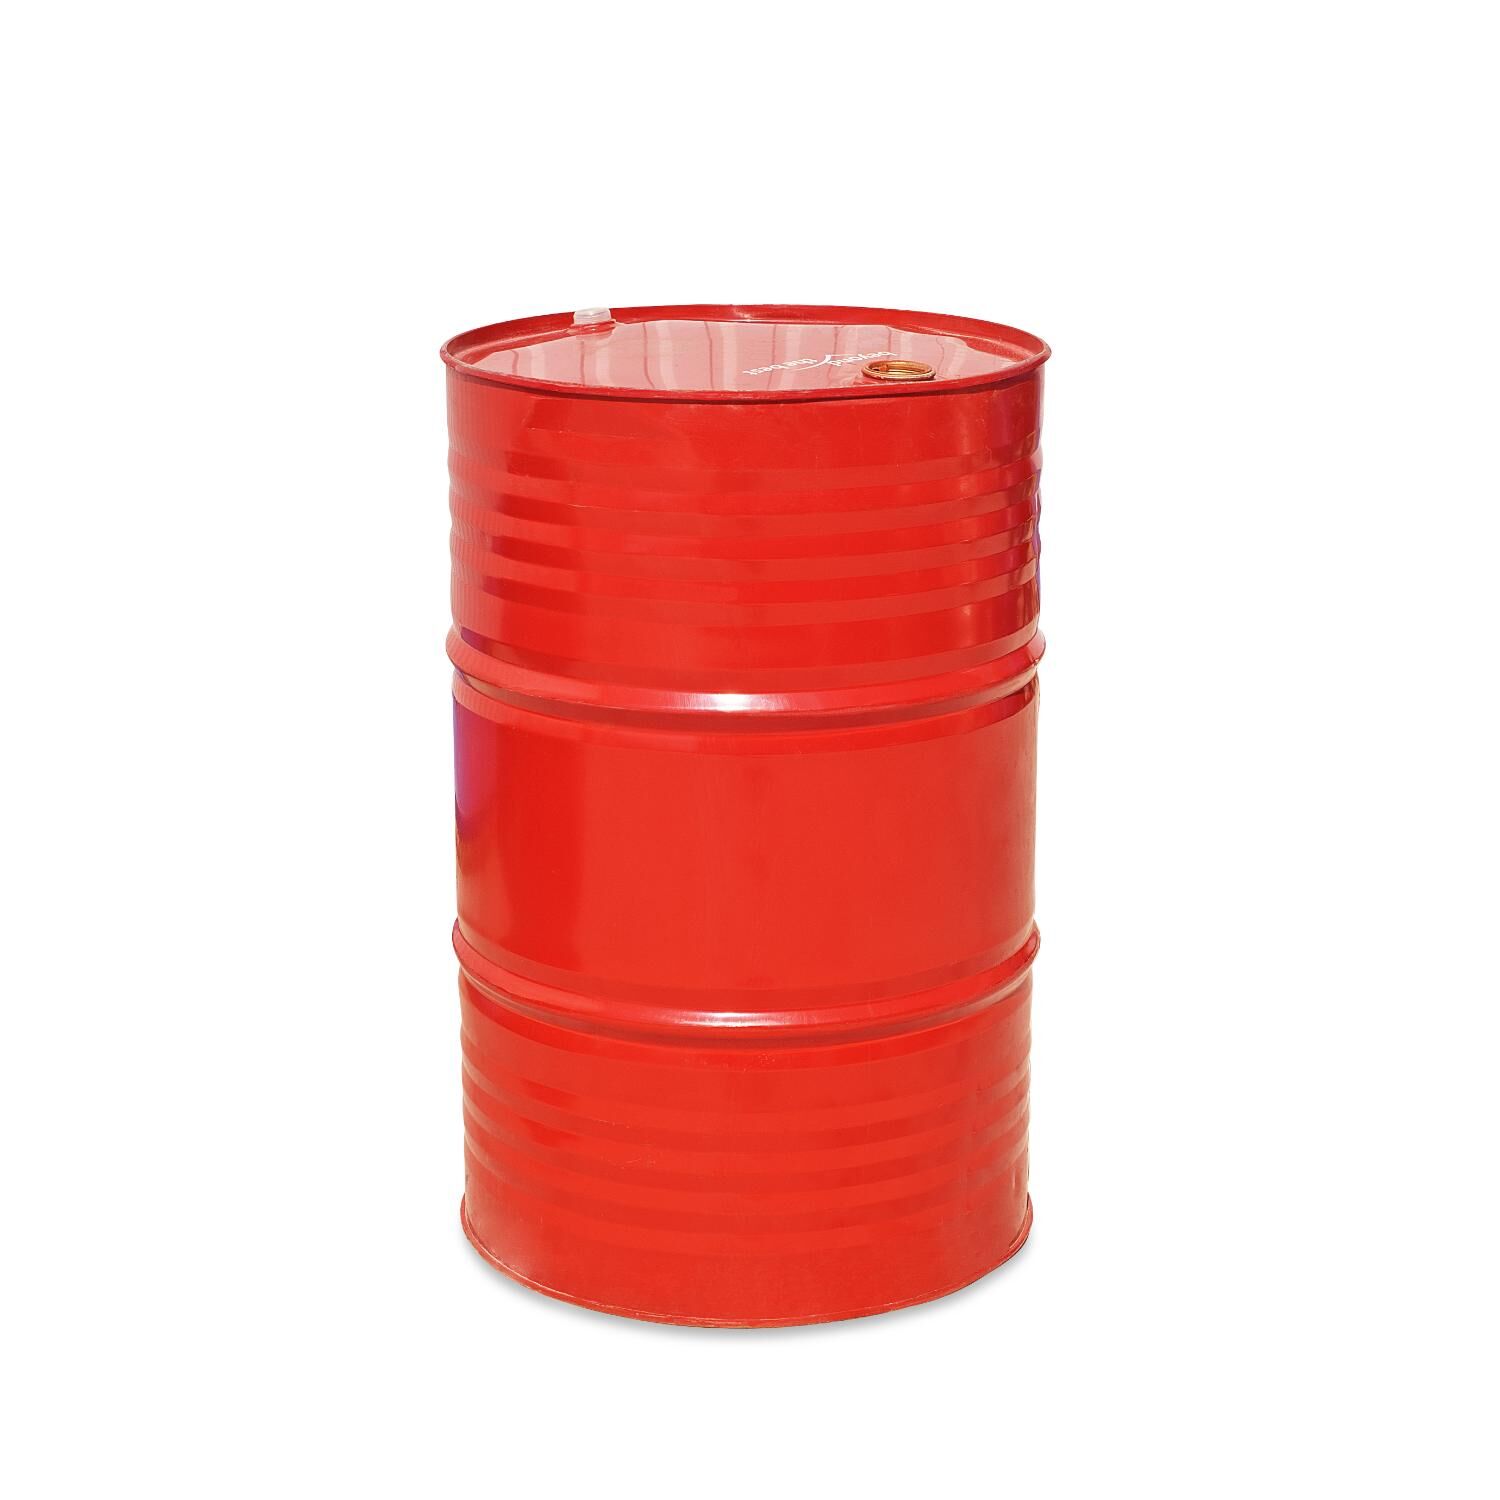 Смазка для опалубки - Эмульсол Промышленник ЭКС (зимний -35°C) 200 литров 2